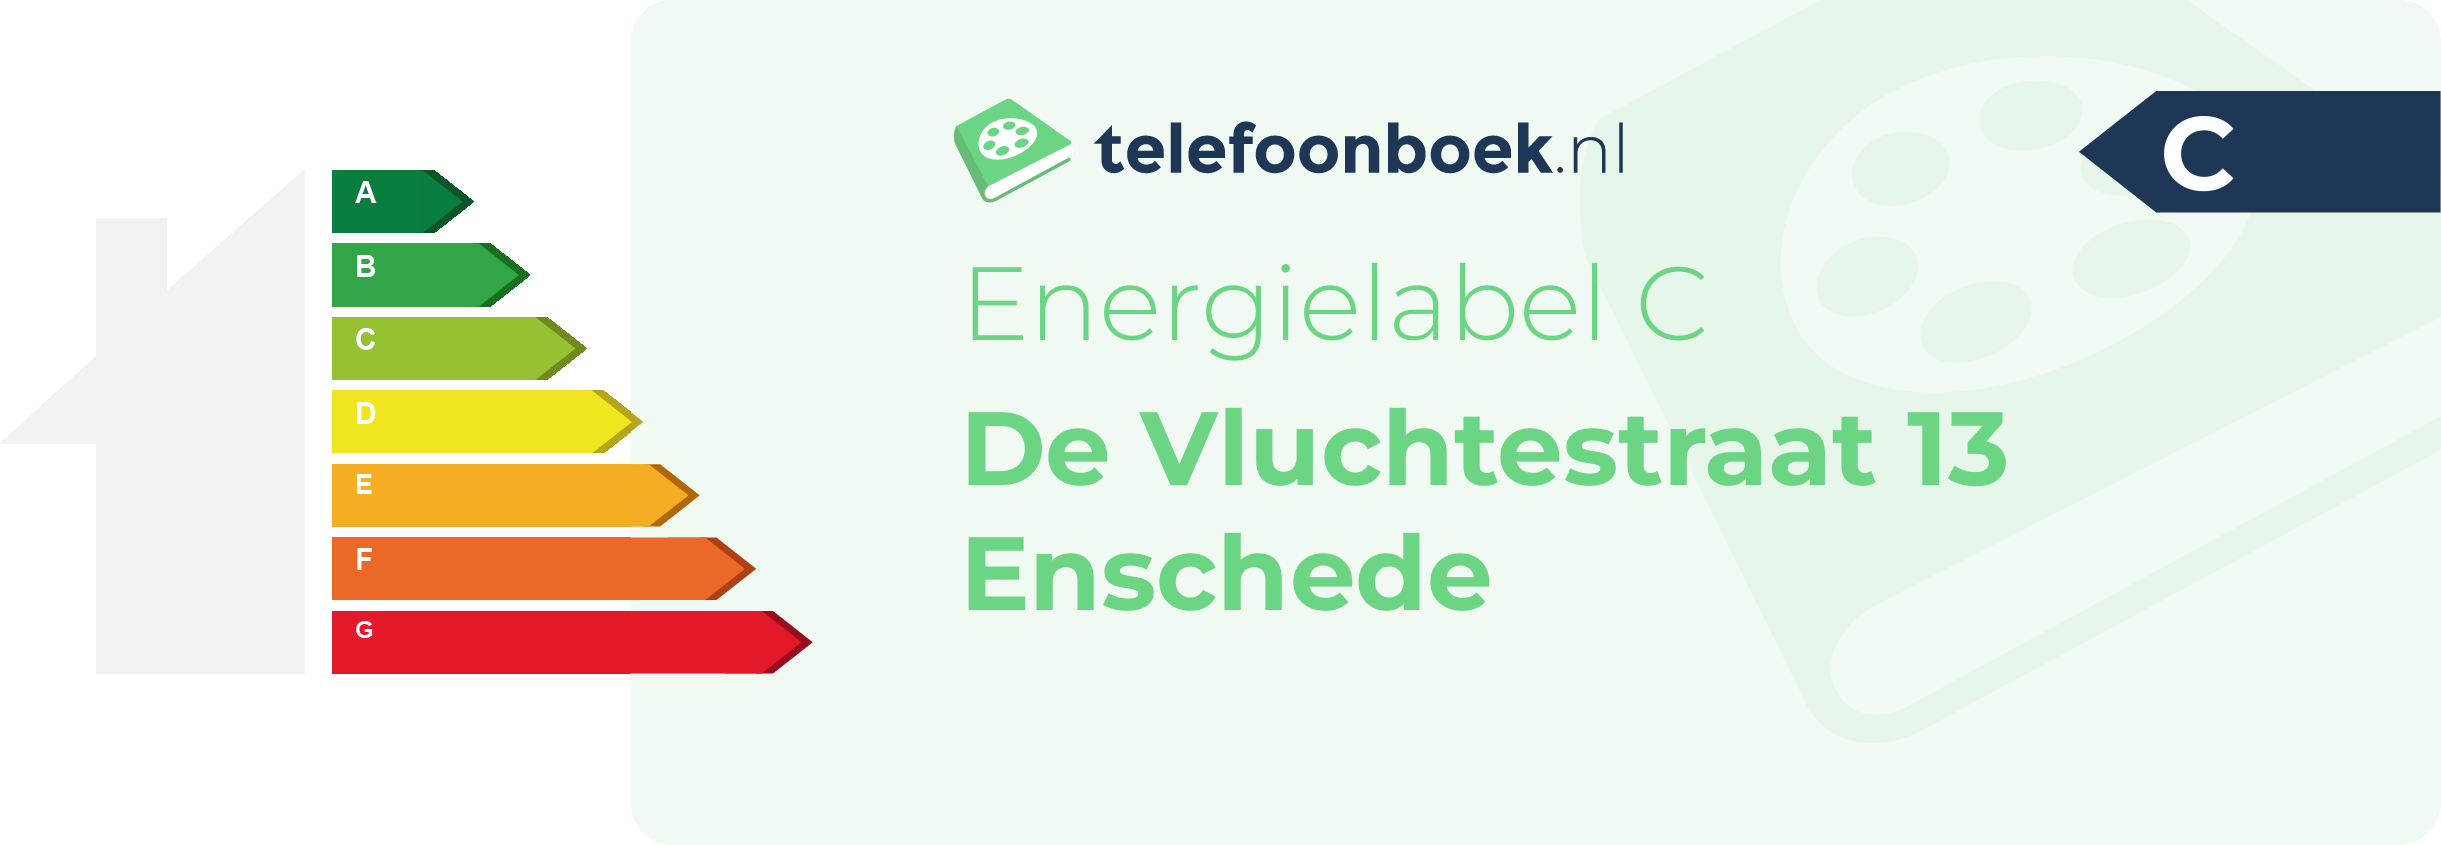 Energielabel De Vluchtestraat 13 Enschede